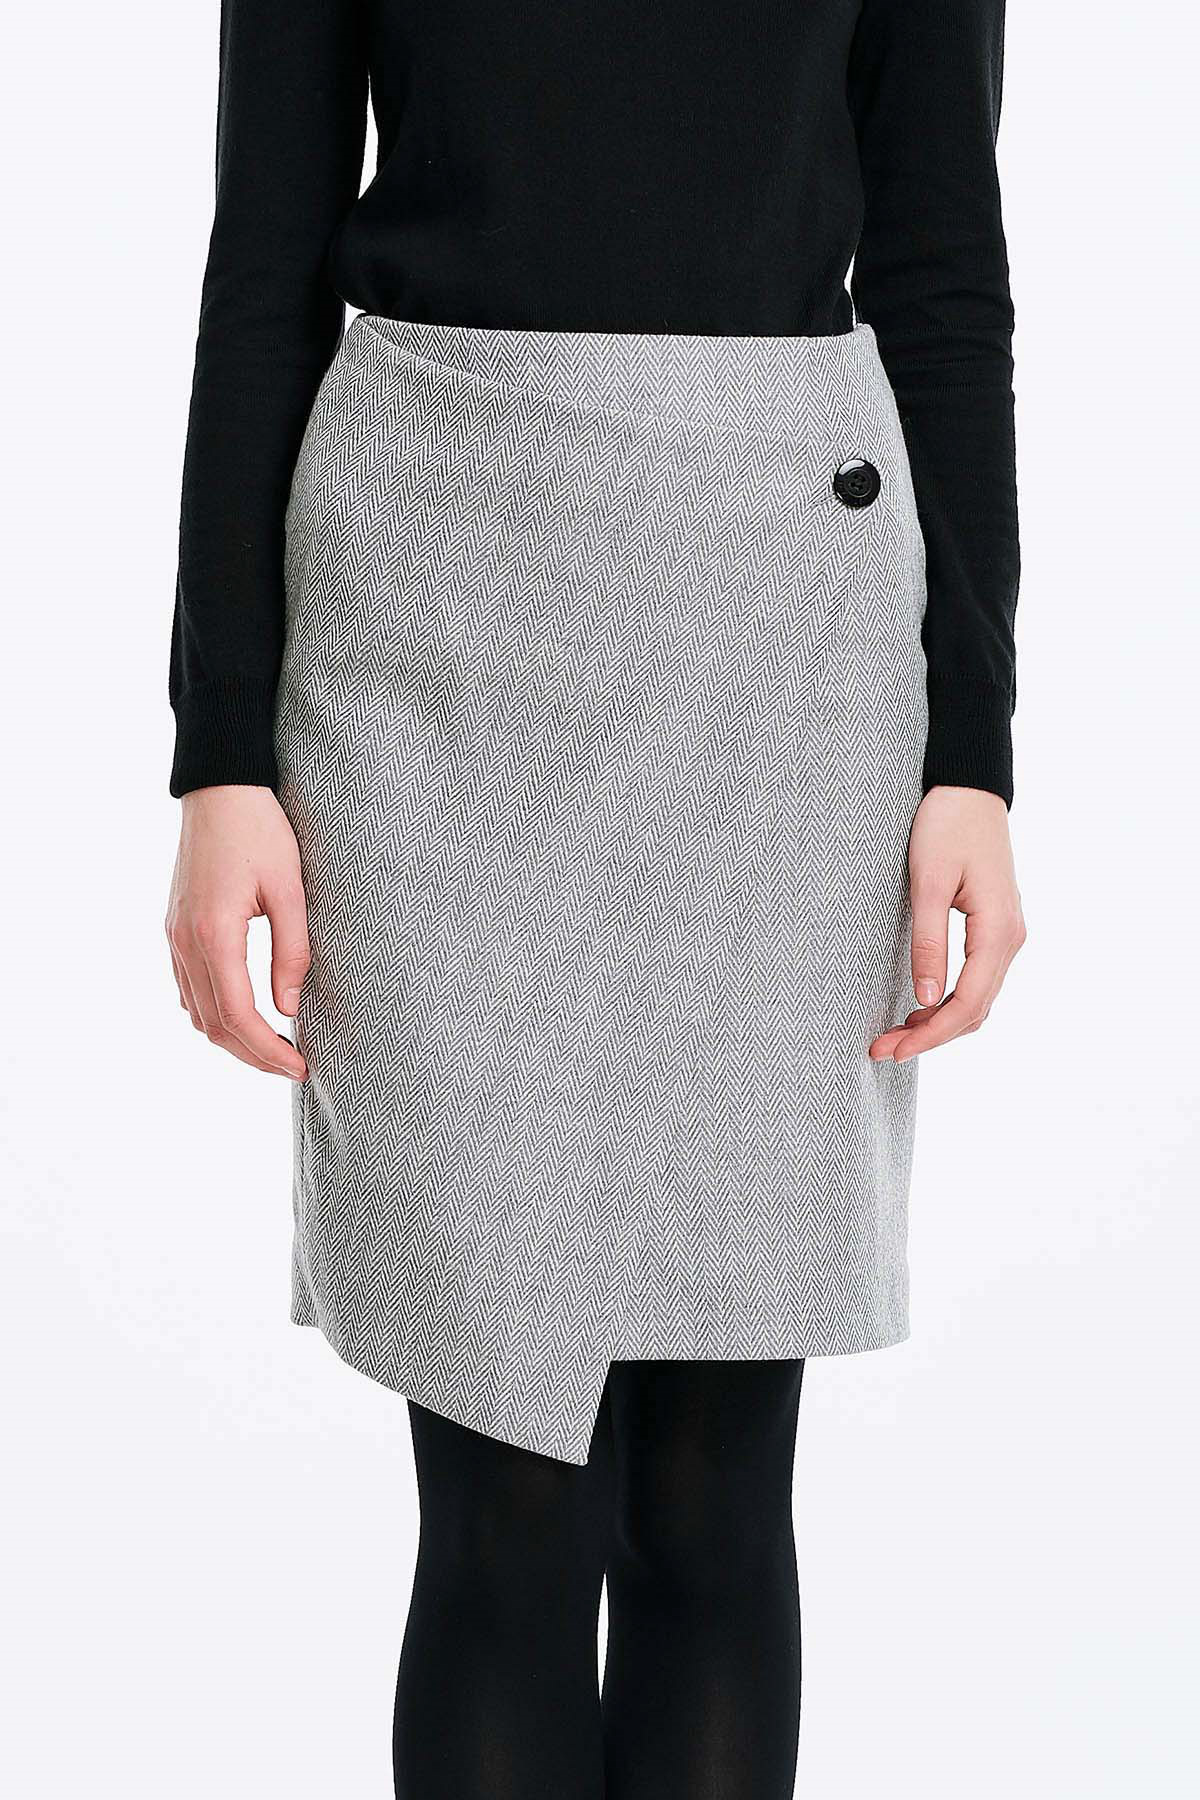 Wrap skirt with a herringbone print, photo 1